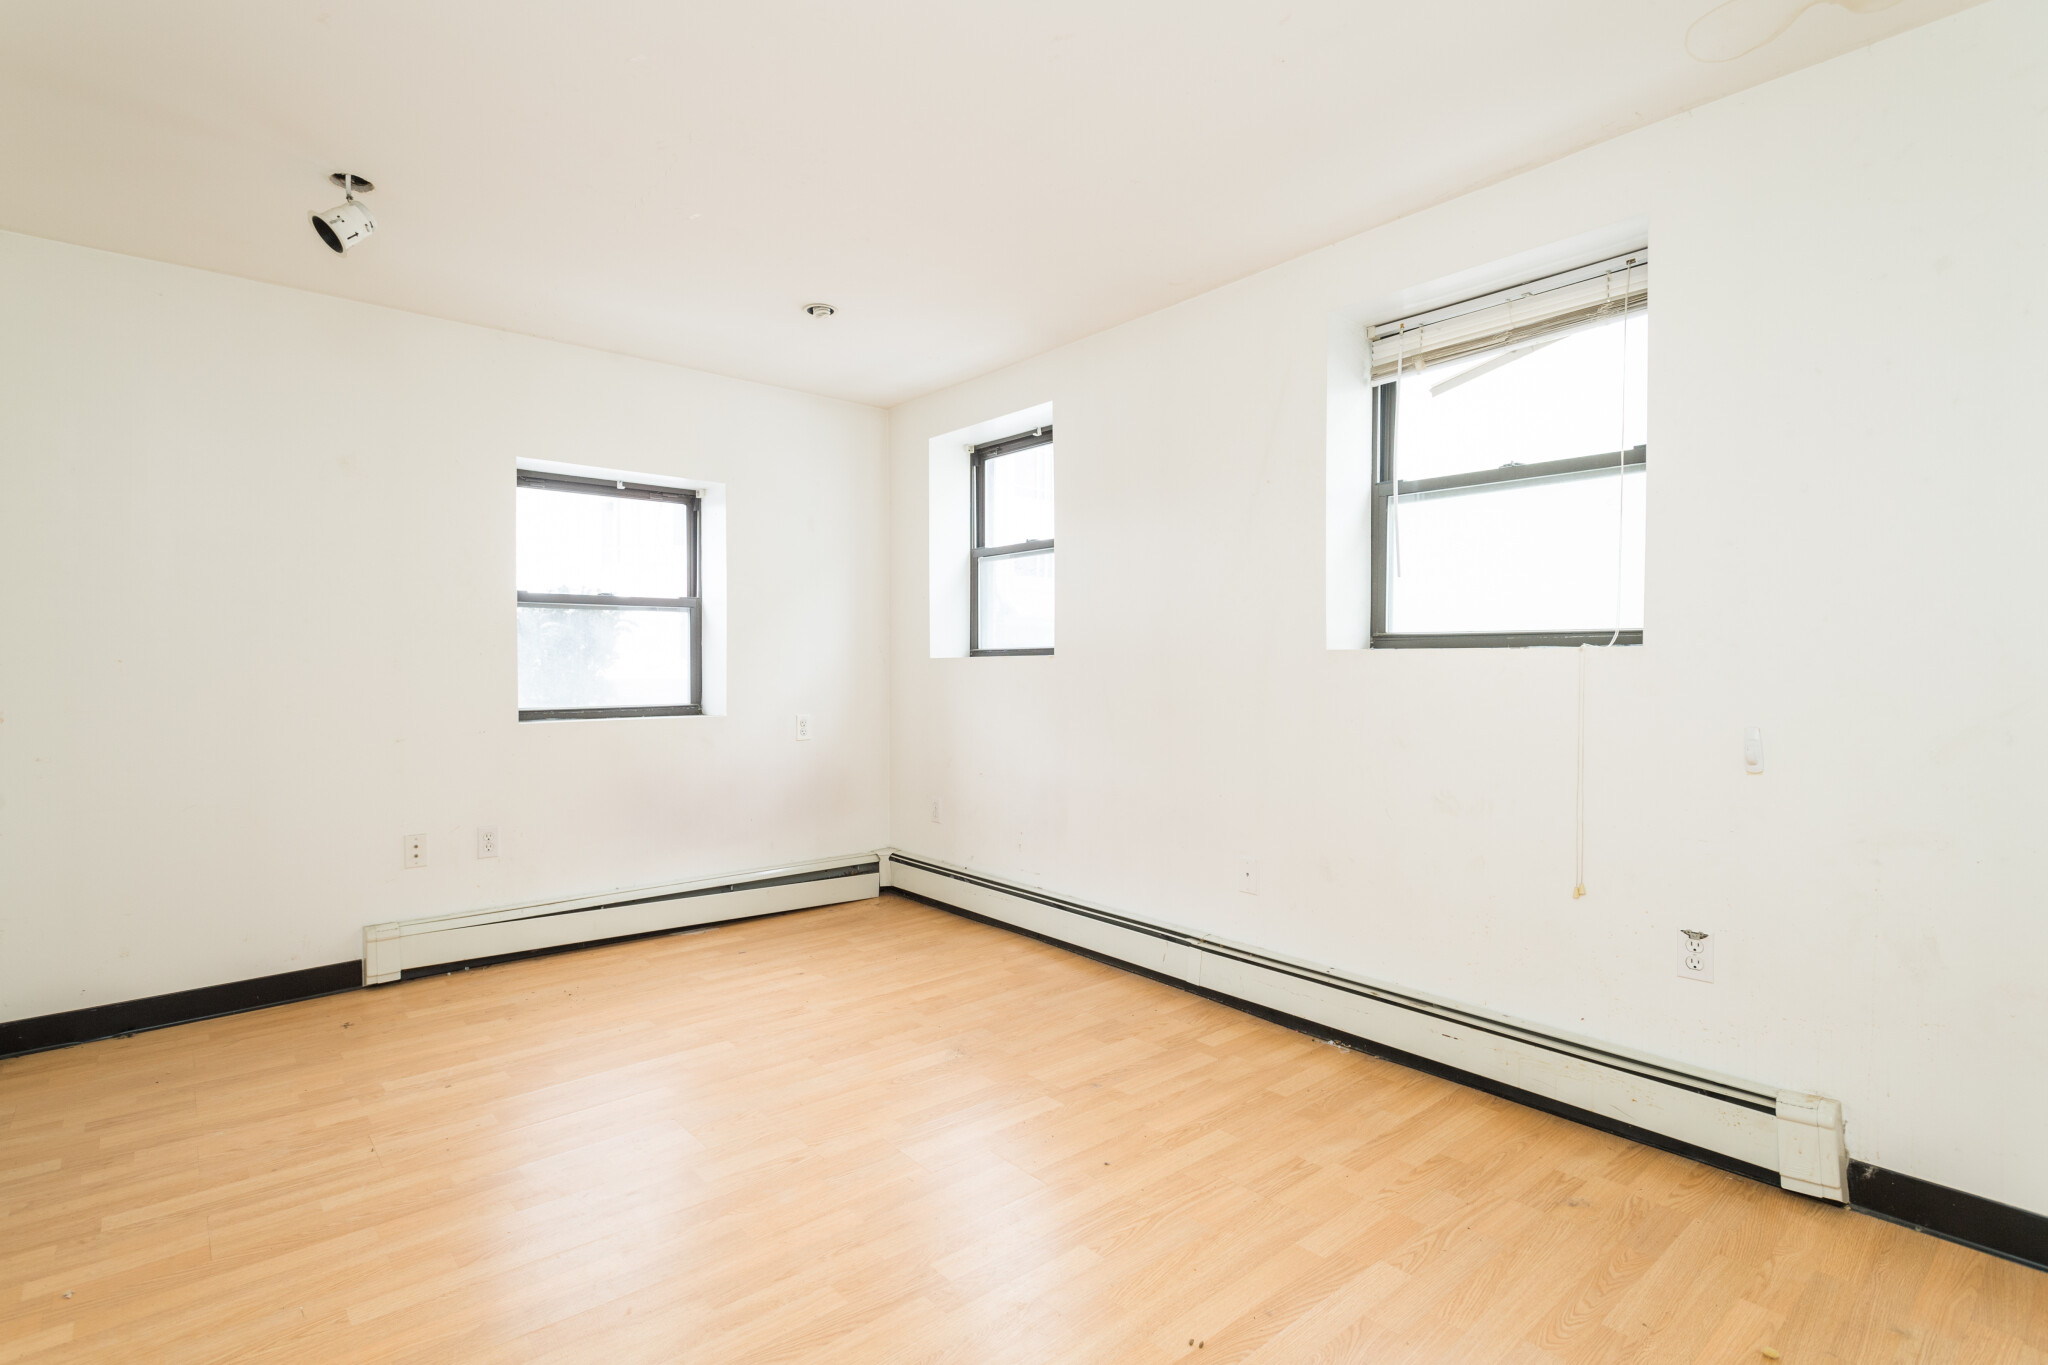 Photos of apartment on Elko St.,Boston MA 02135